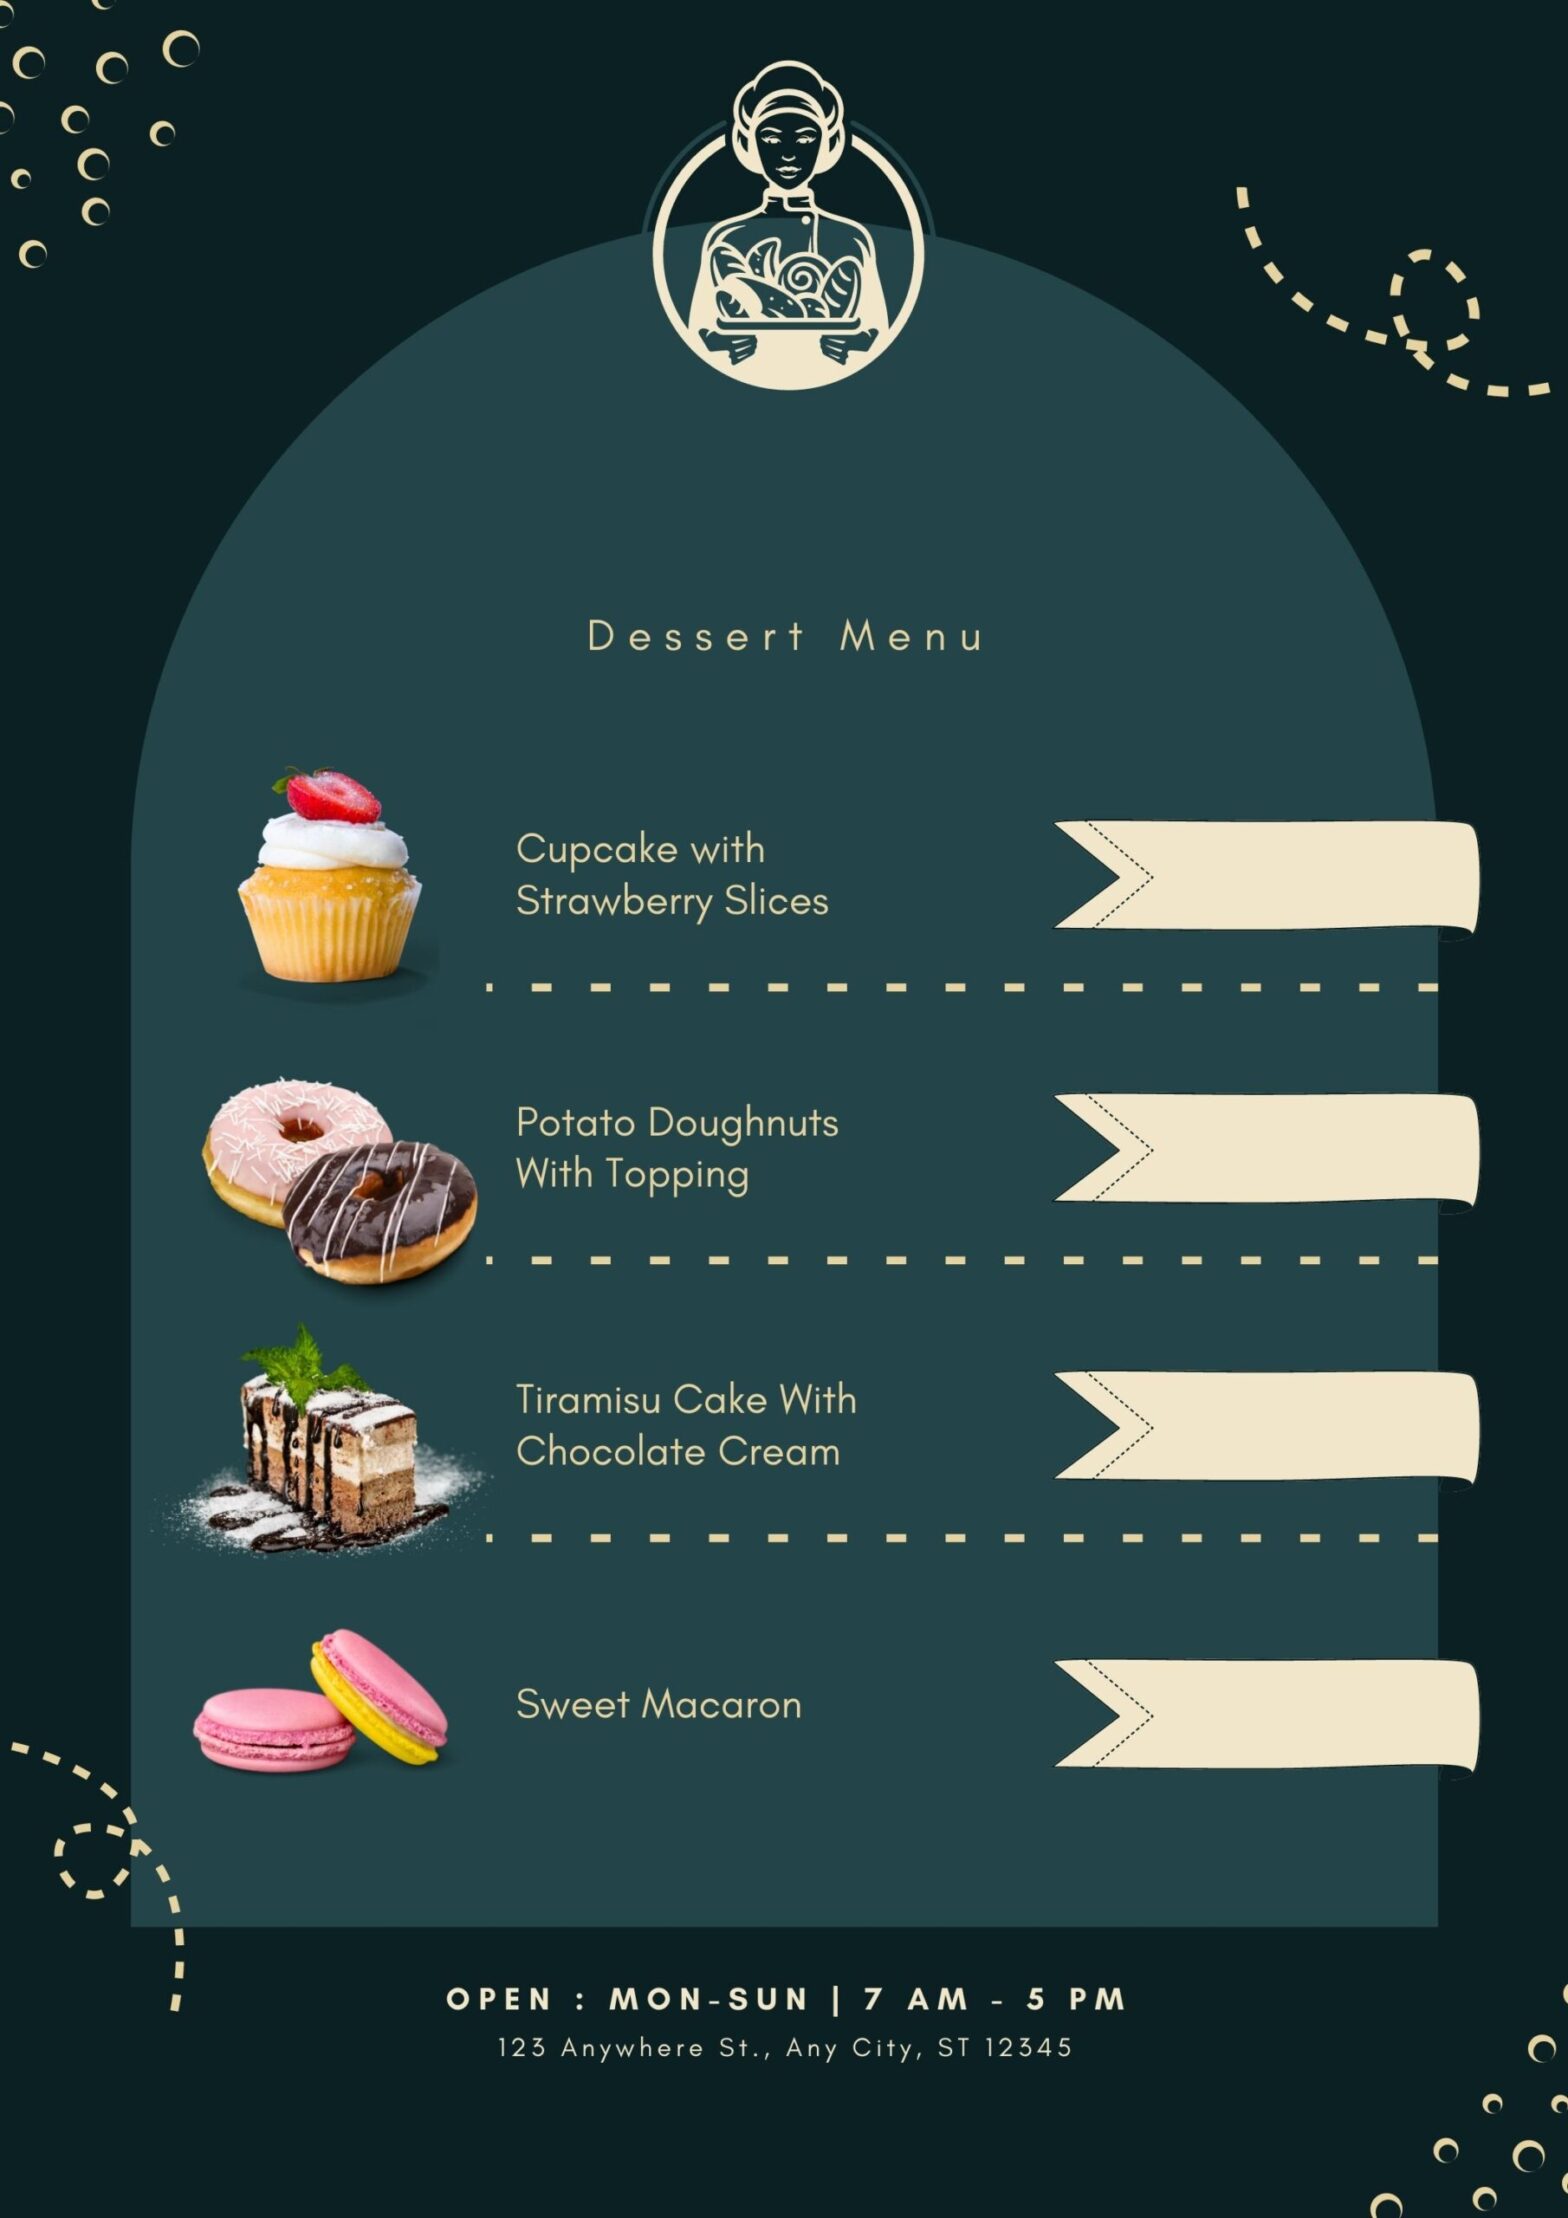 Desert menu